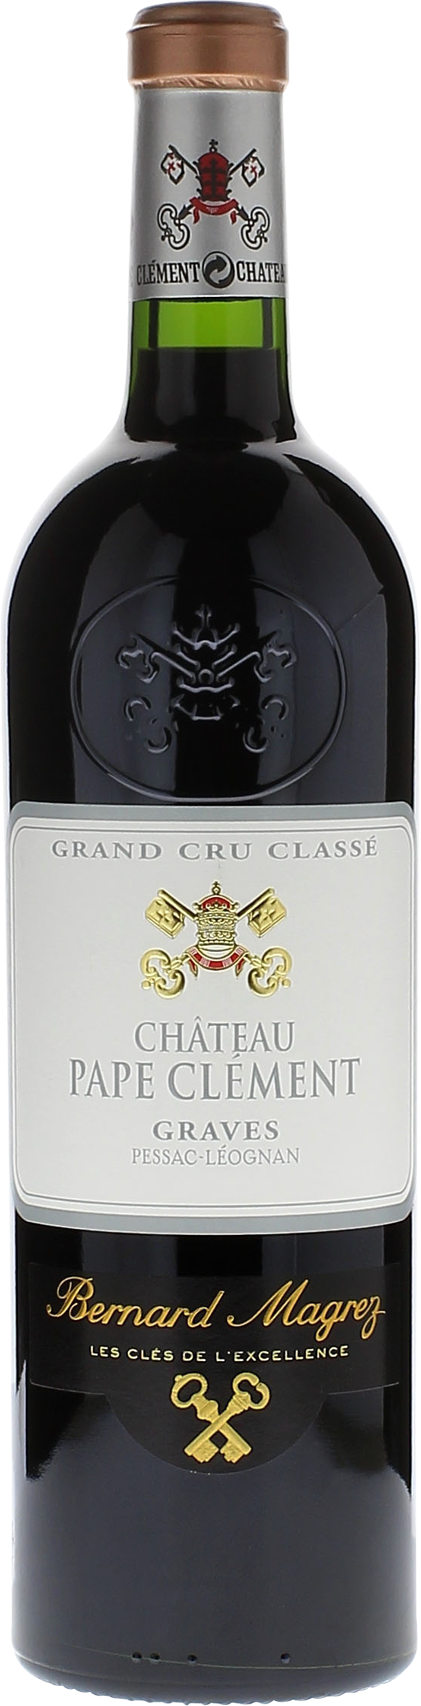 Pape clement rouge 1997 Grand Cru Class Pessac-Lognan, Bordeaux rouge